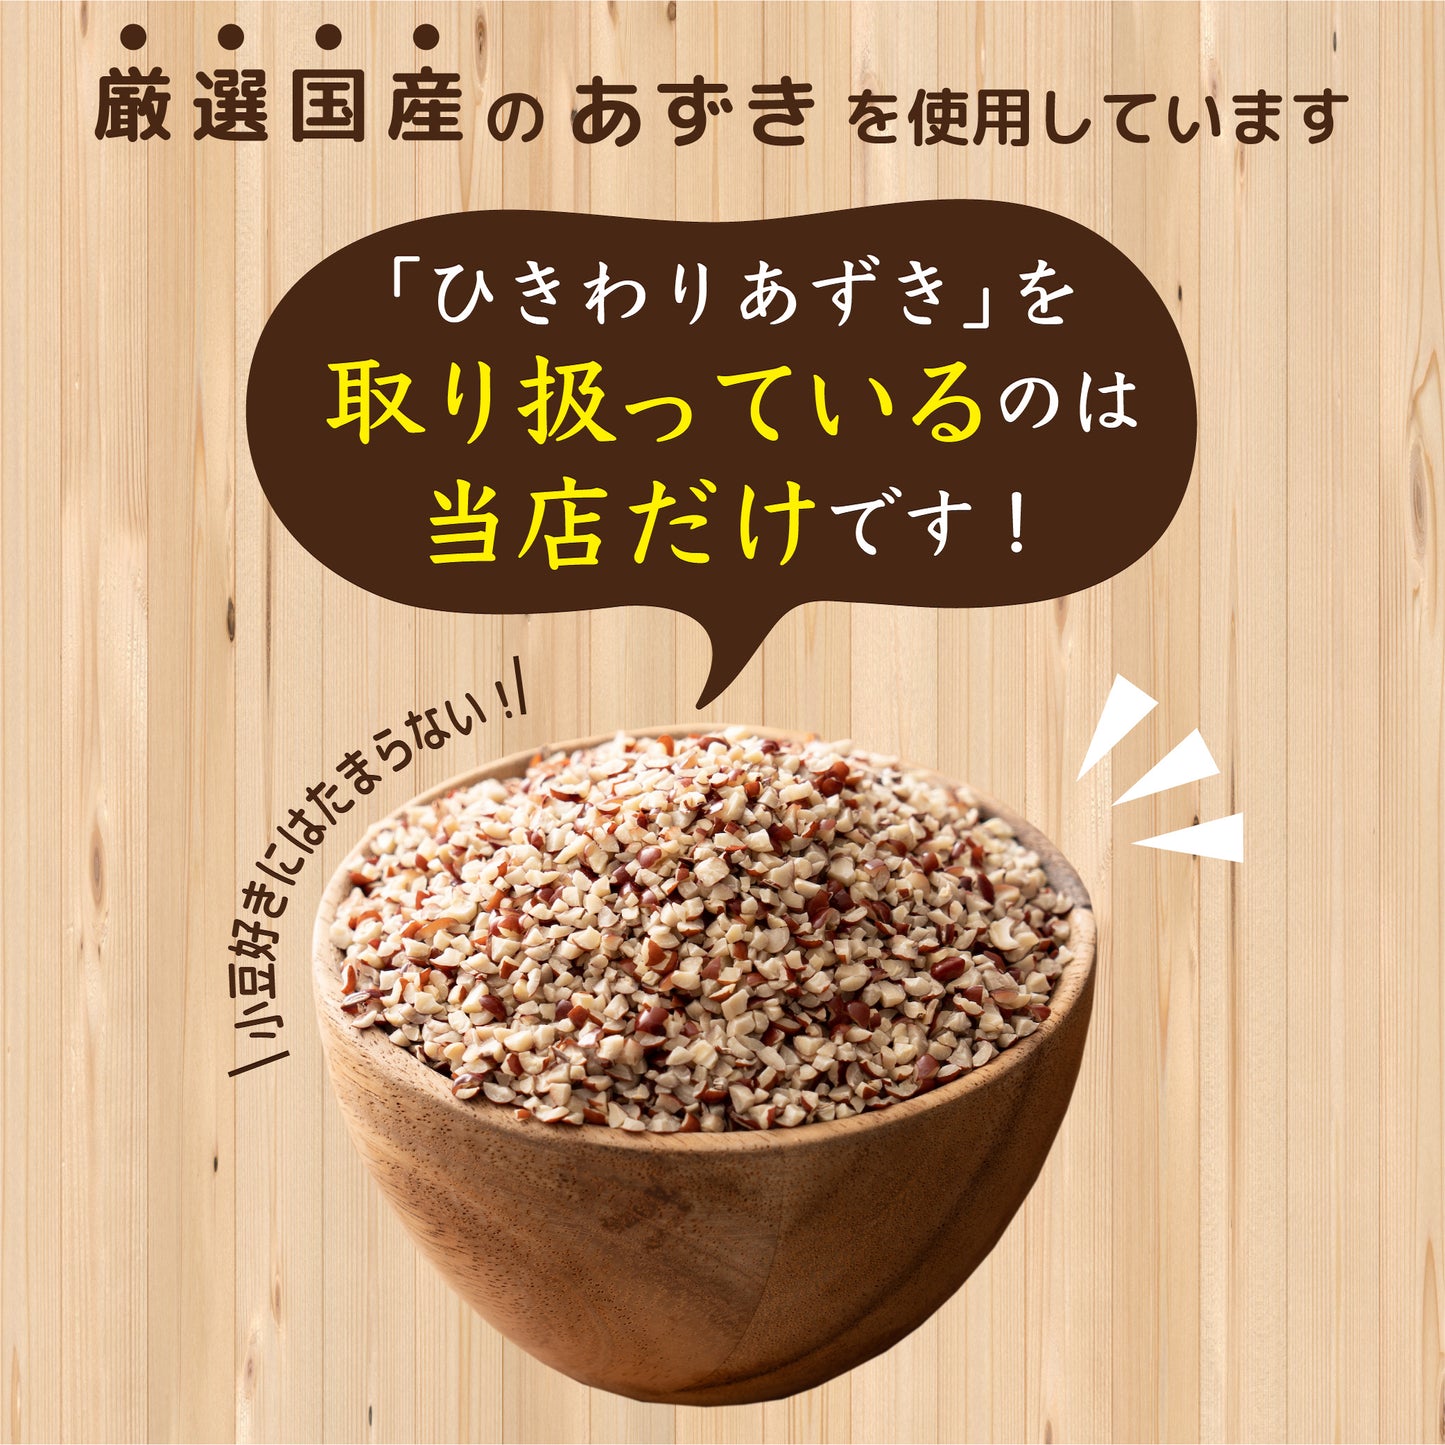 国産 ひきわり小豆 2.7kg(450g×6袋)